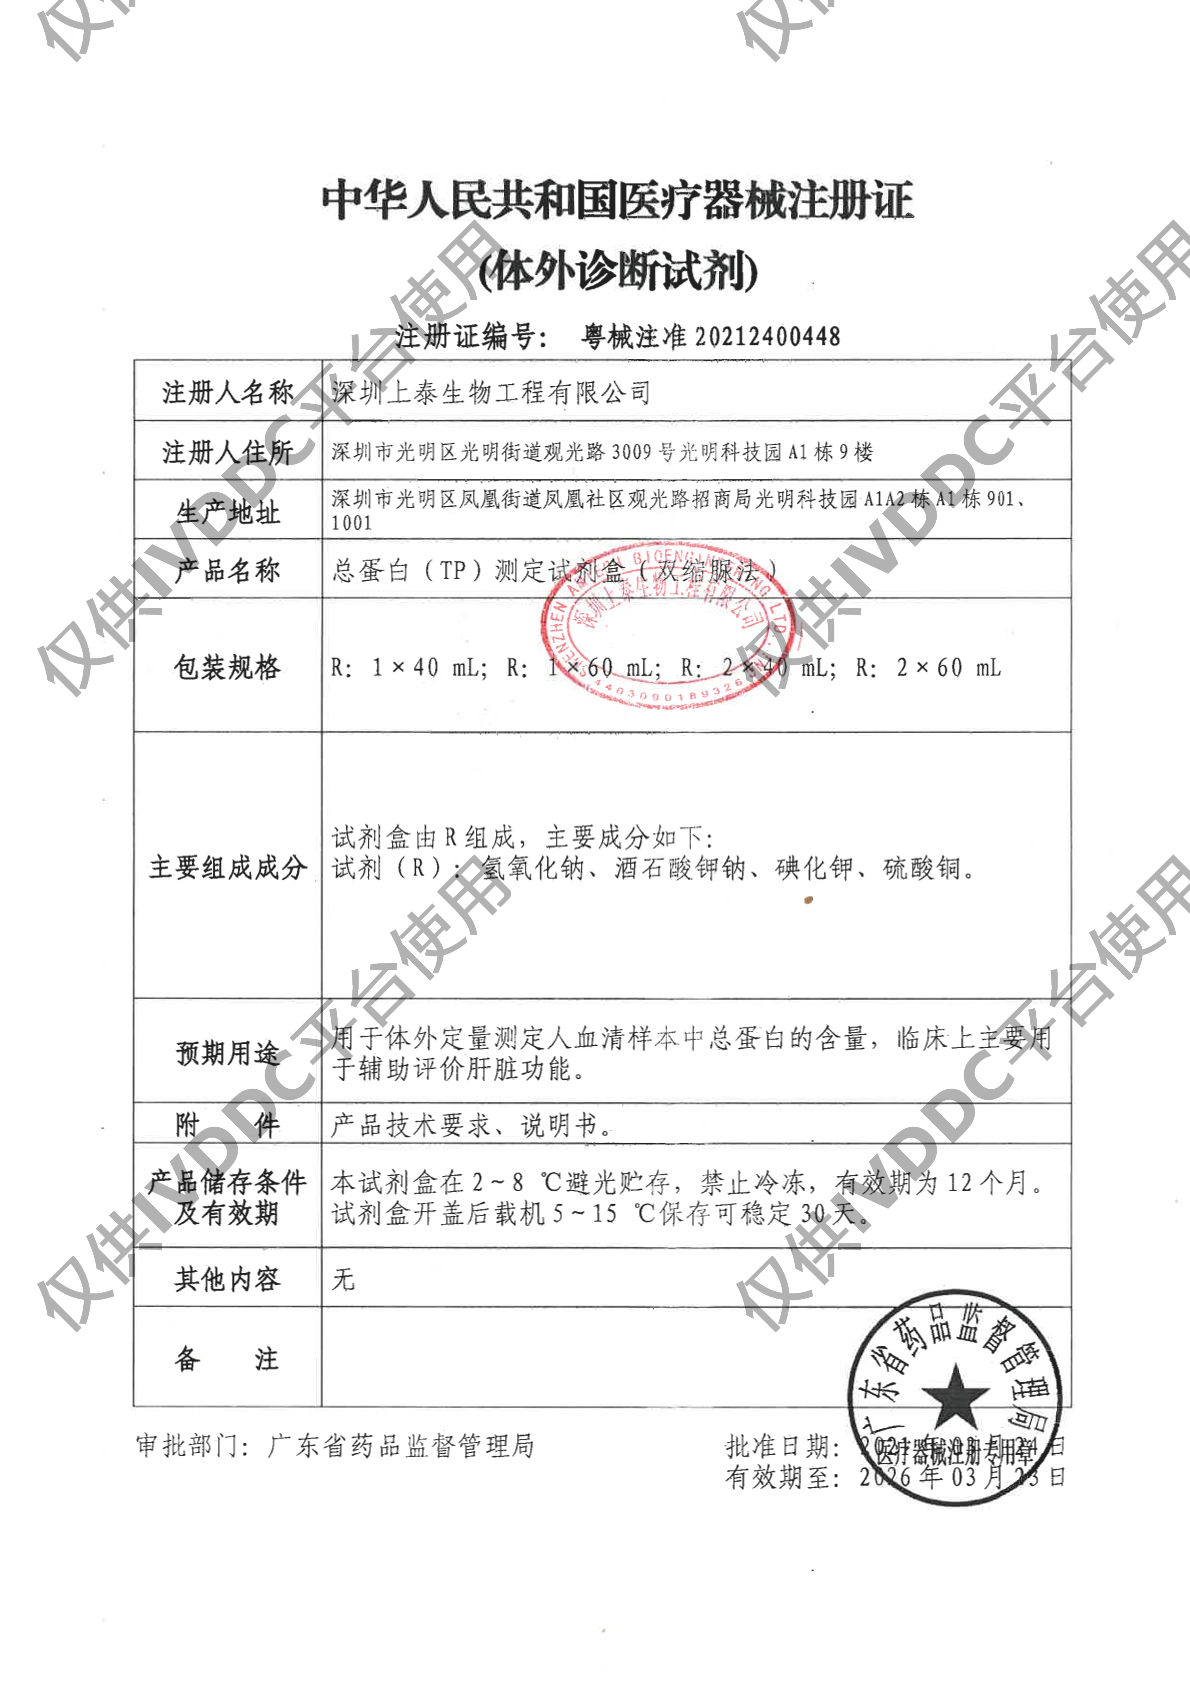 【深圳上泰】总蛋白(TP)测定试剂盒(双缩脲法)注册证